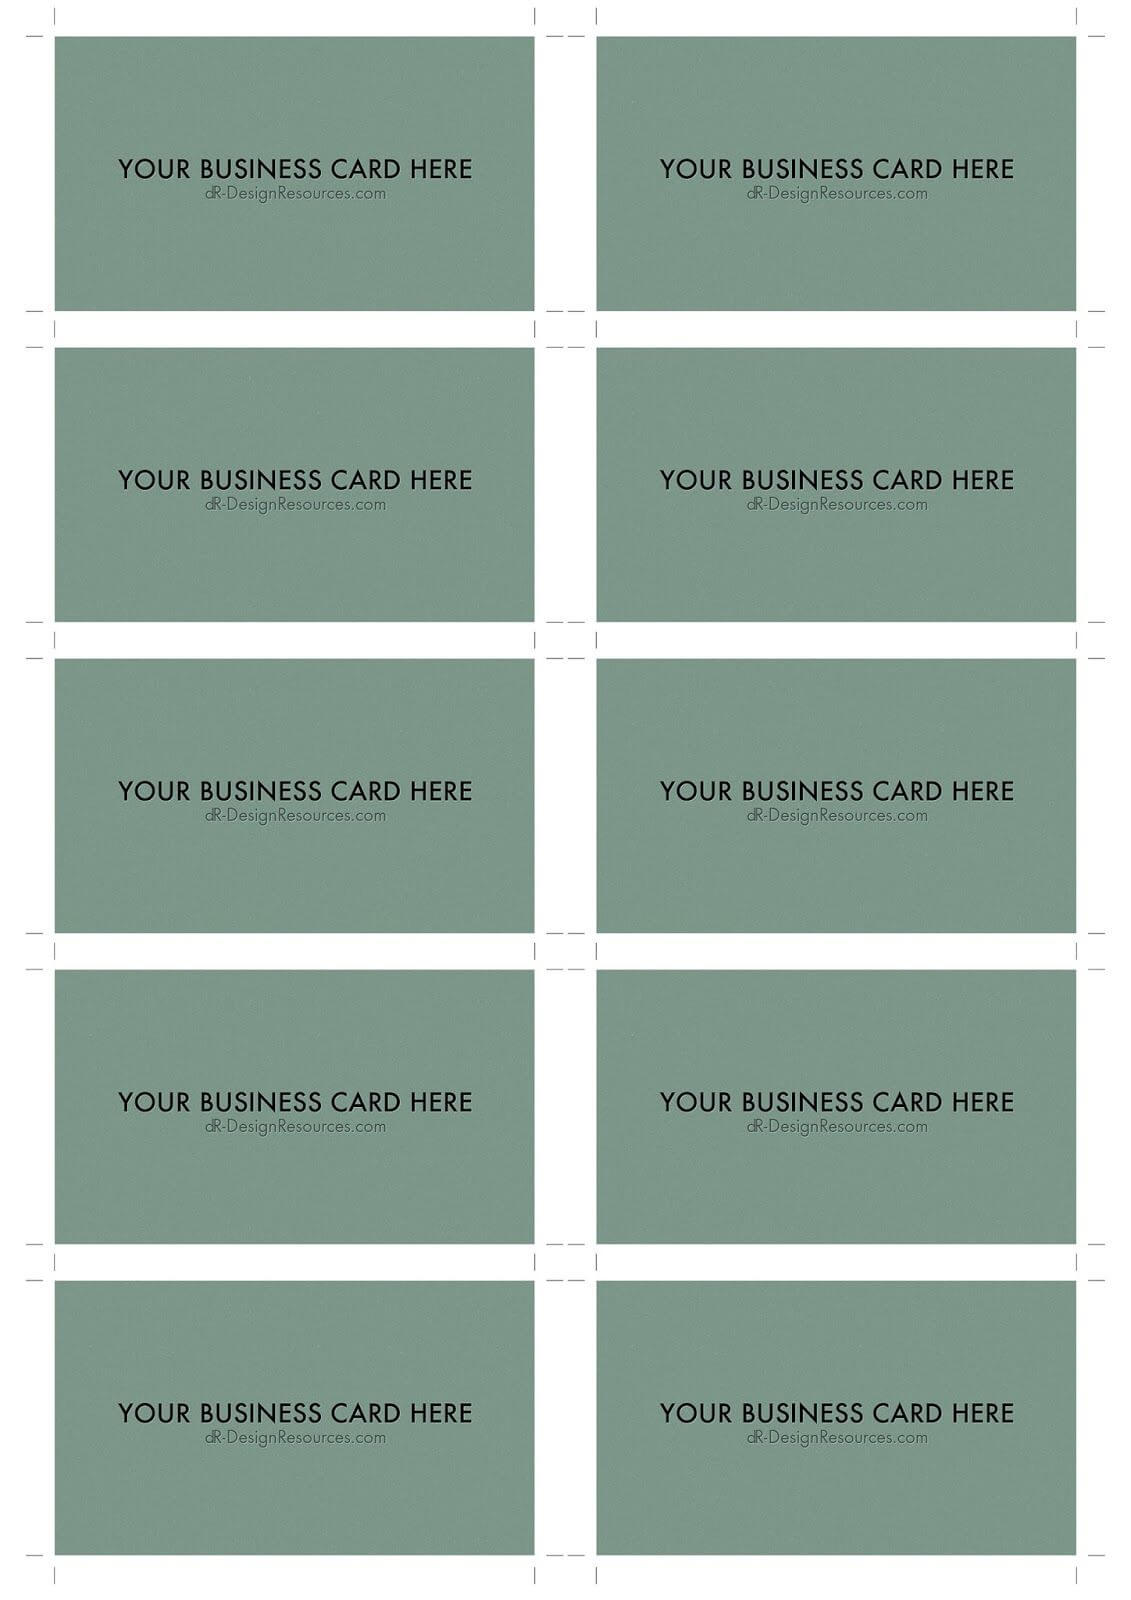 A4 Business Card Template Psd (10 Per Sheet) | Business Card With Regard To Business Card Size Template Psd